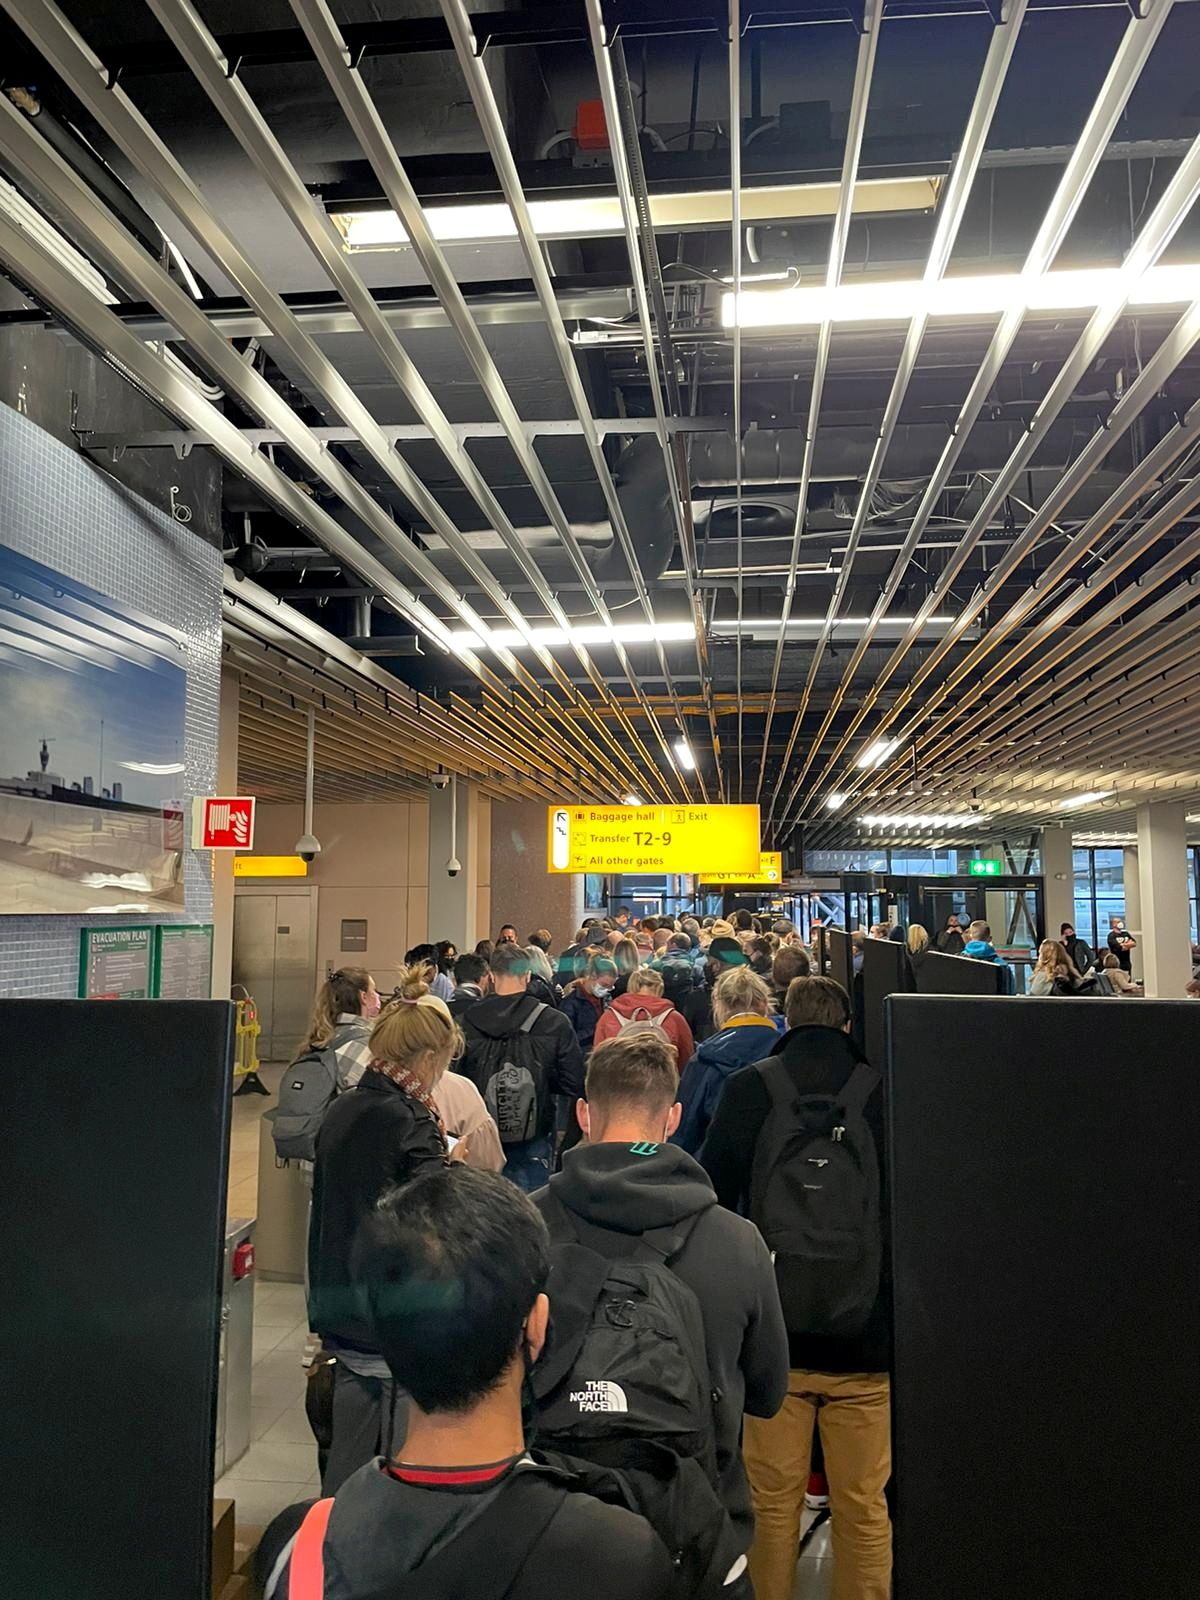 مسافرون يقفون في صف للخضوع لفحص للكشف عن فيروس كورونا في مطار سخيبول في أمستردام يوم الجمعة. صورة حصلت عليها رويترز من وسائل التواصل الاجتماعي.